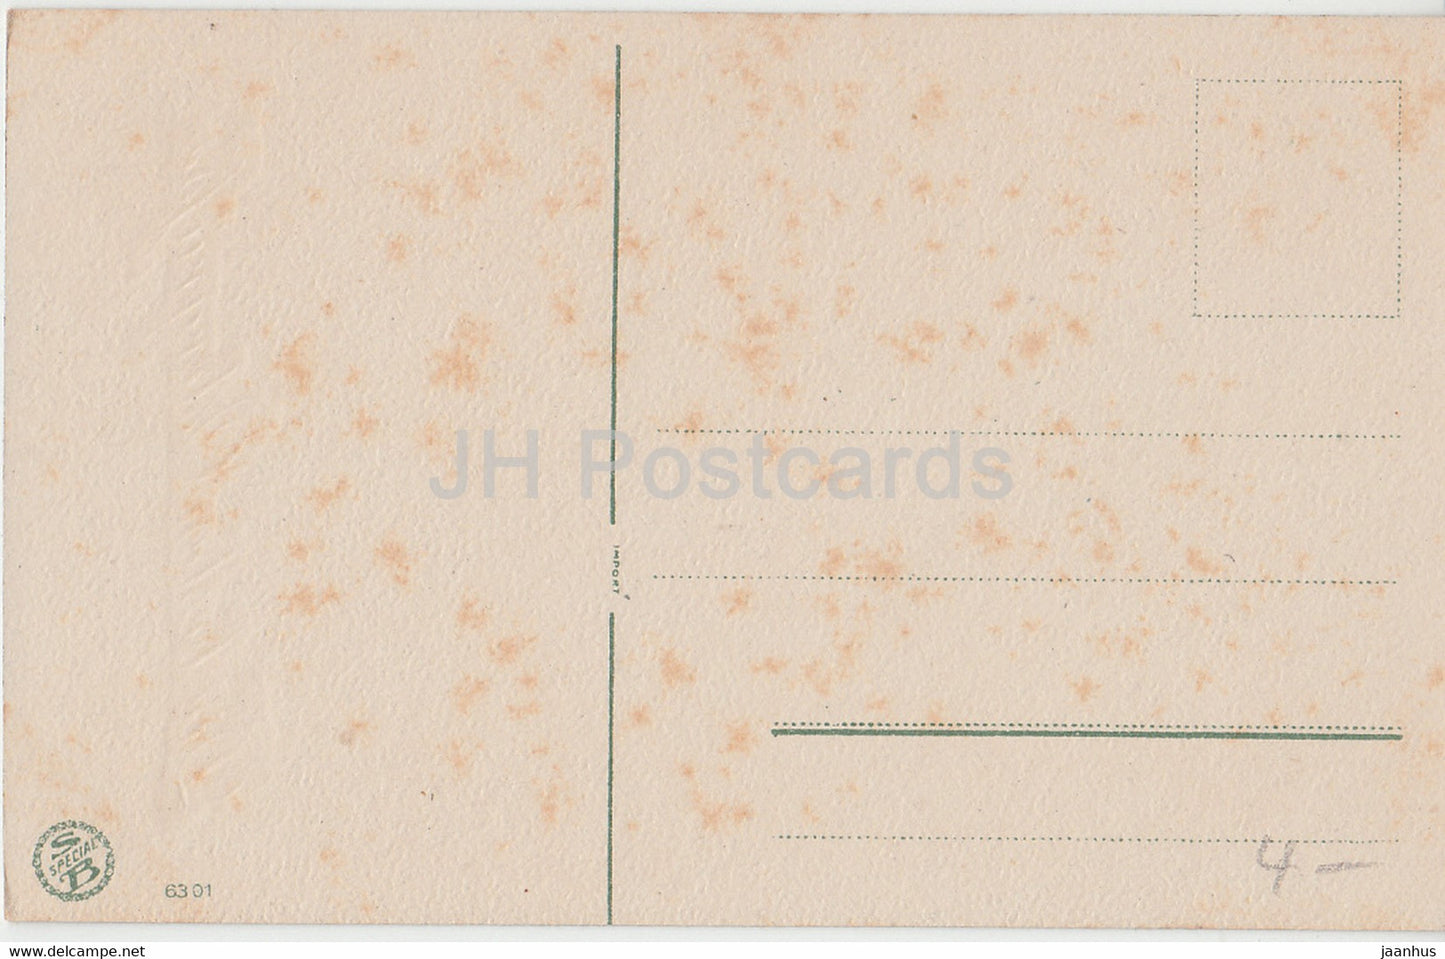 Carte de vœux de Pâques - Die Besten Ostergrusse - fleurs - SB Special 6301 - carte postale ancienne - Allemagne - inutilisée